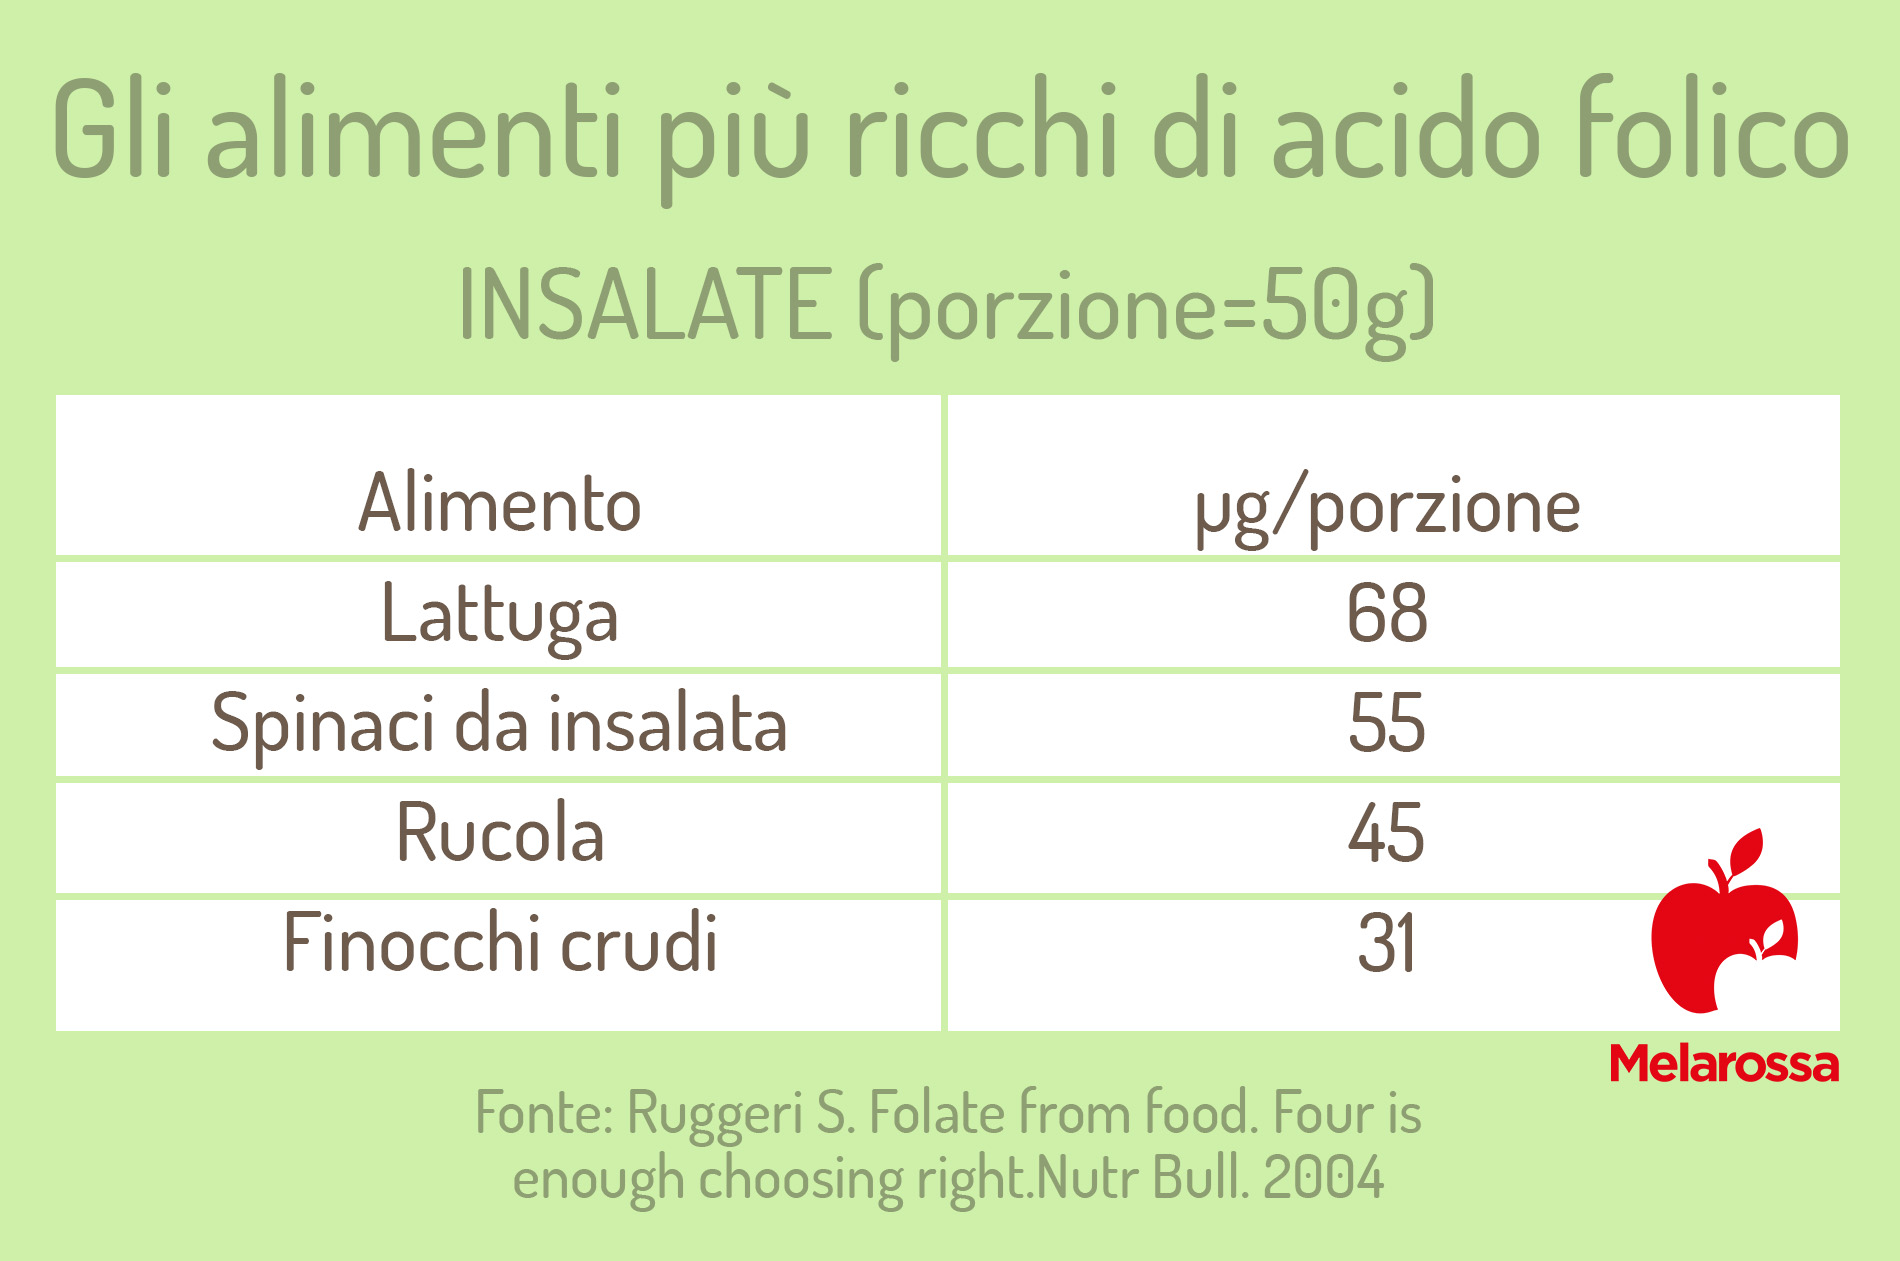 alimenti ricchi di acido folico: insalate 